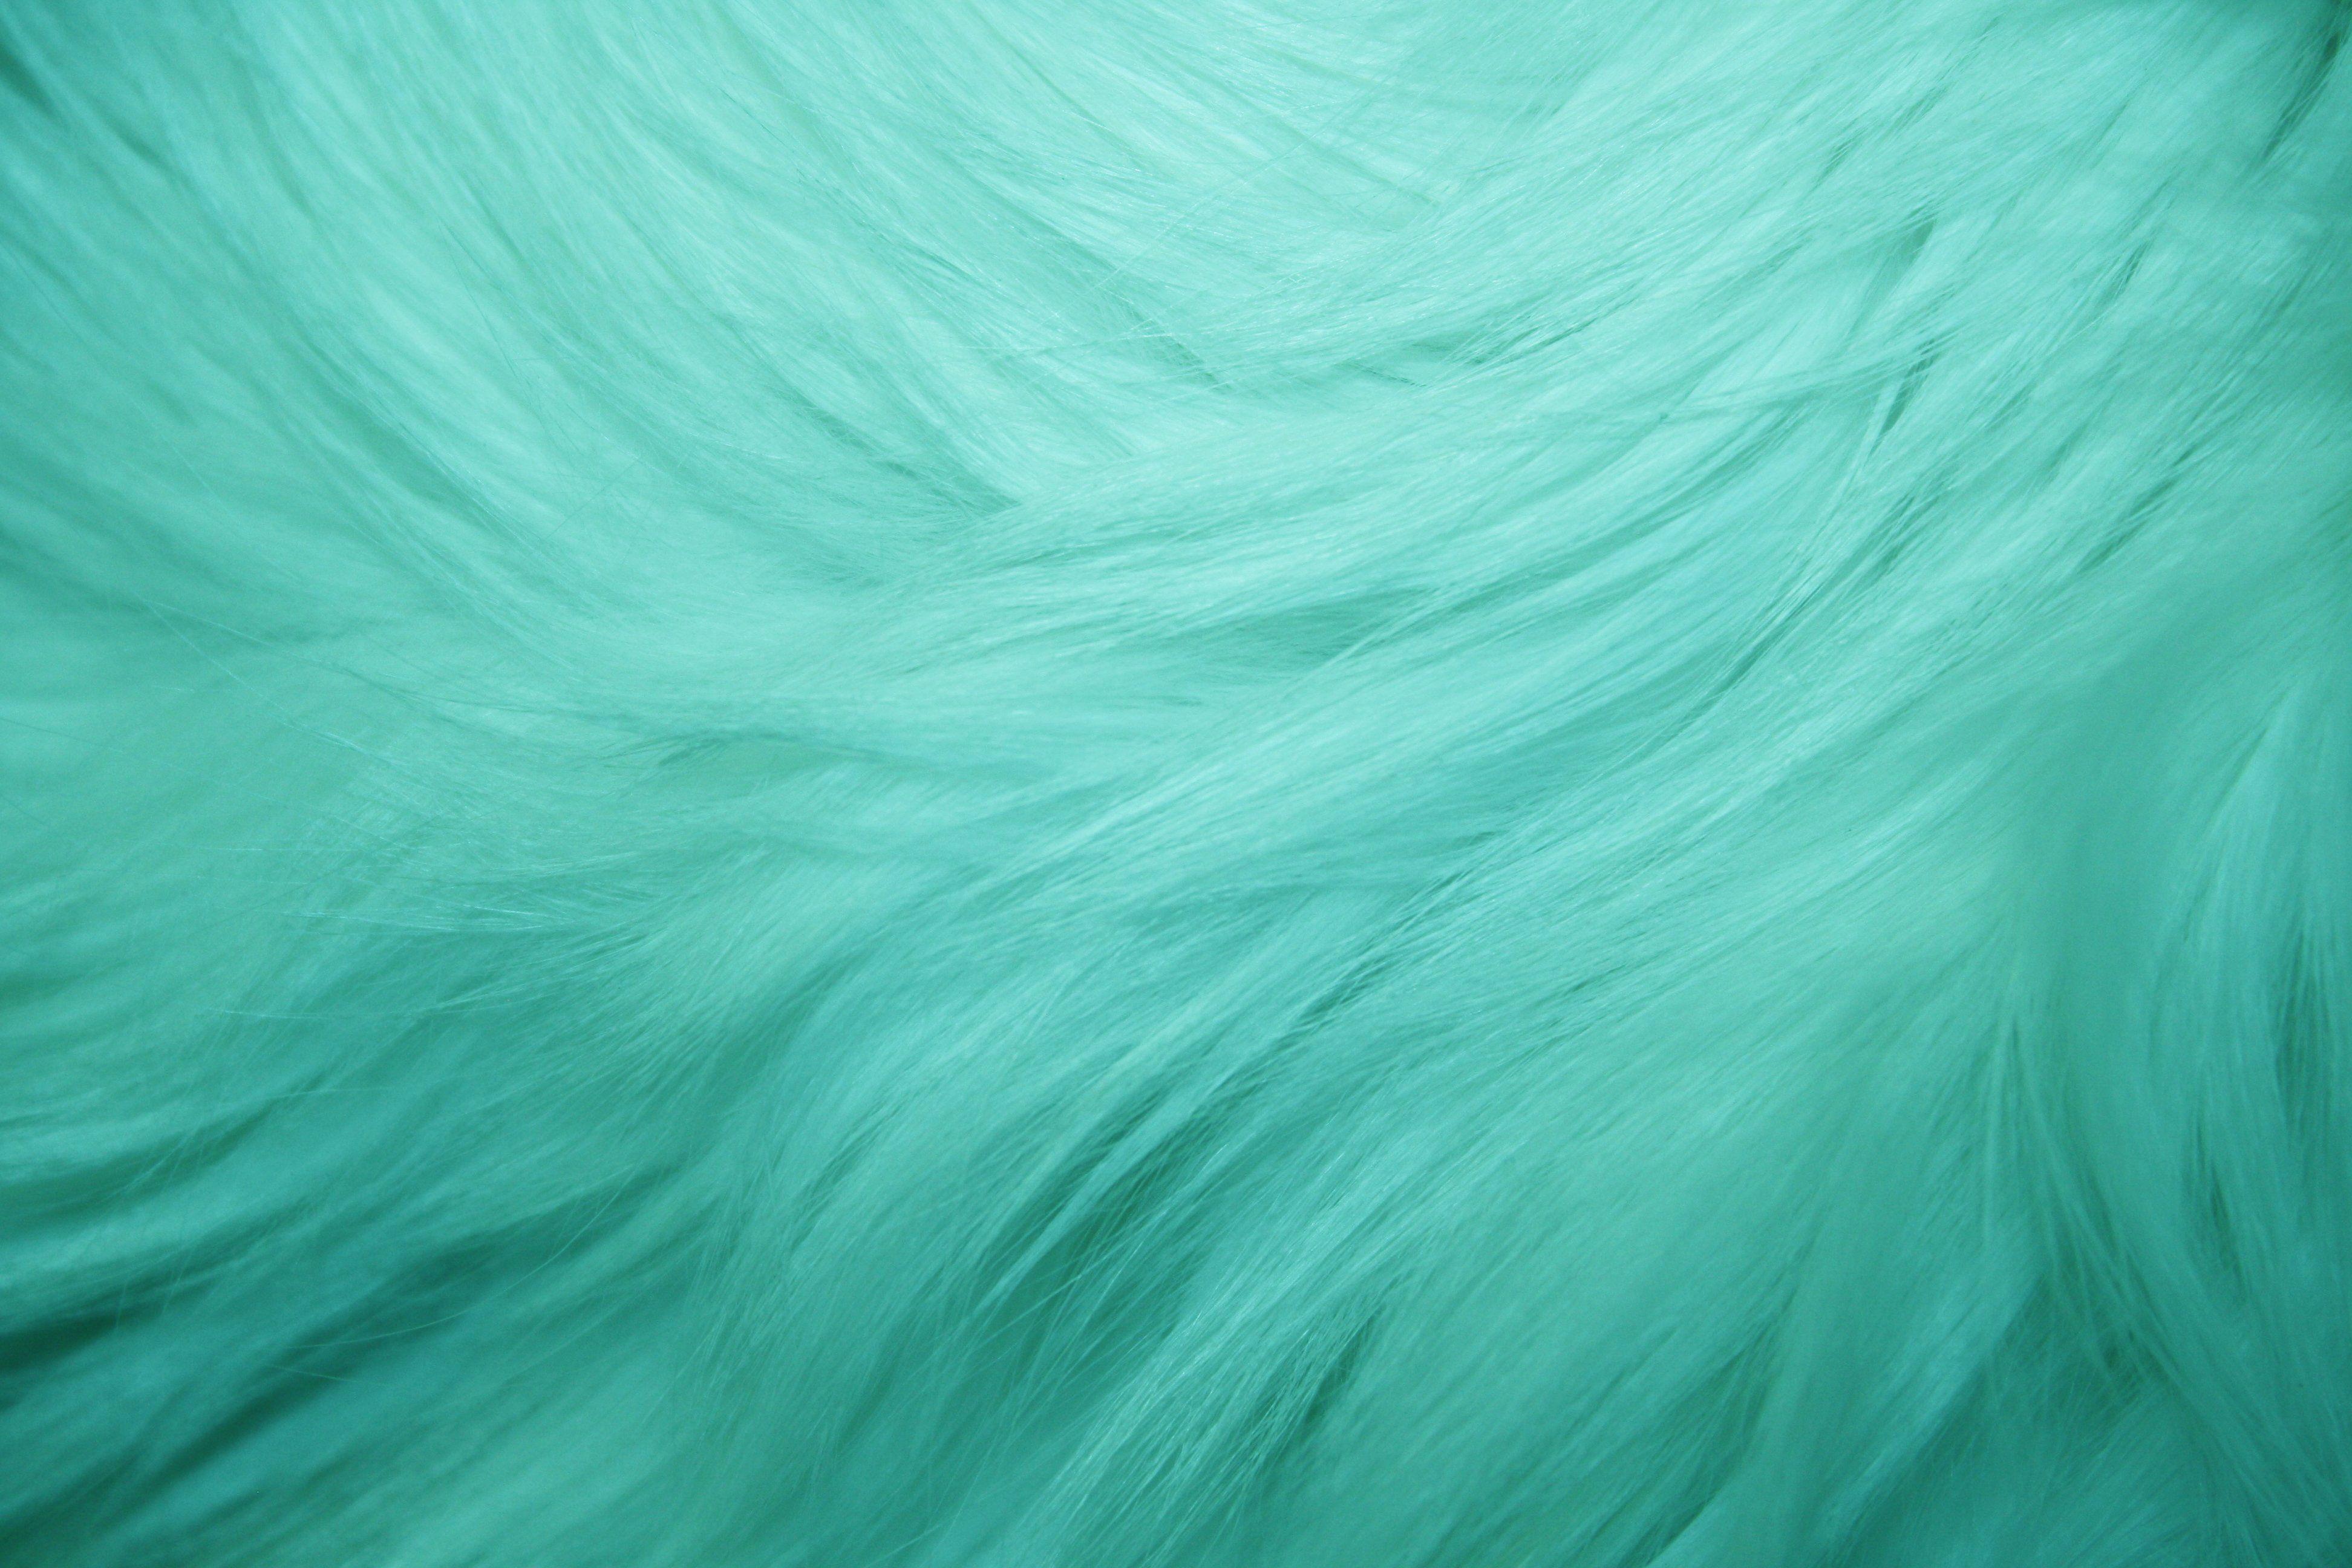 Teal Fur Texture Picture. Free Photograph. Photo Public Domain